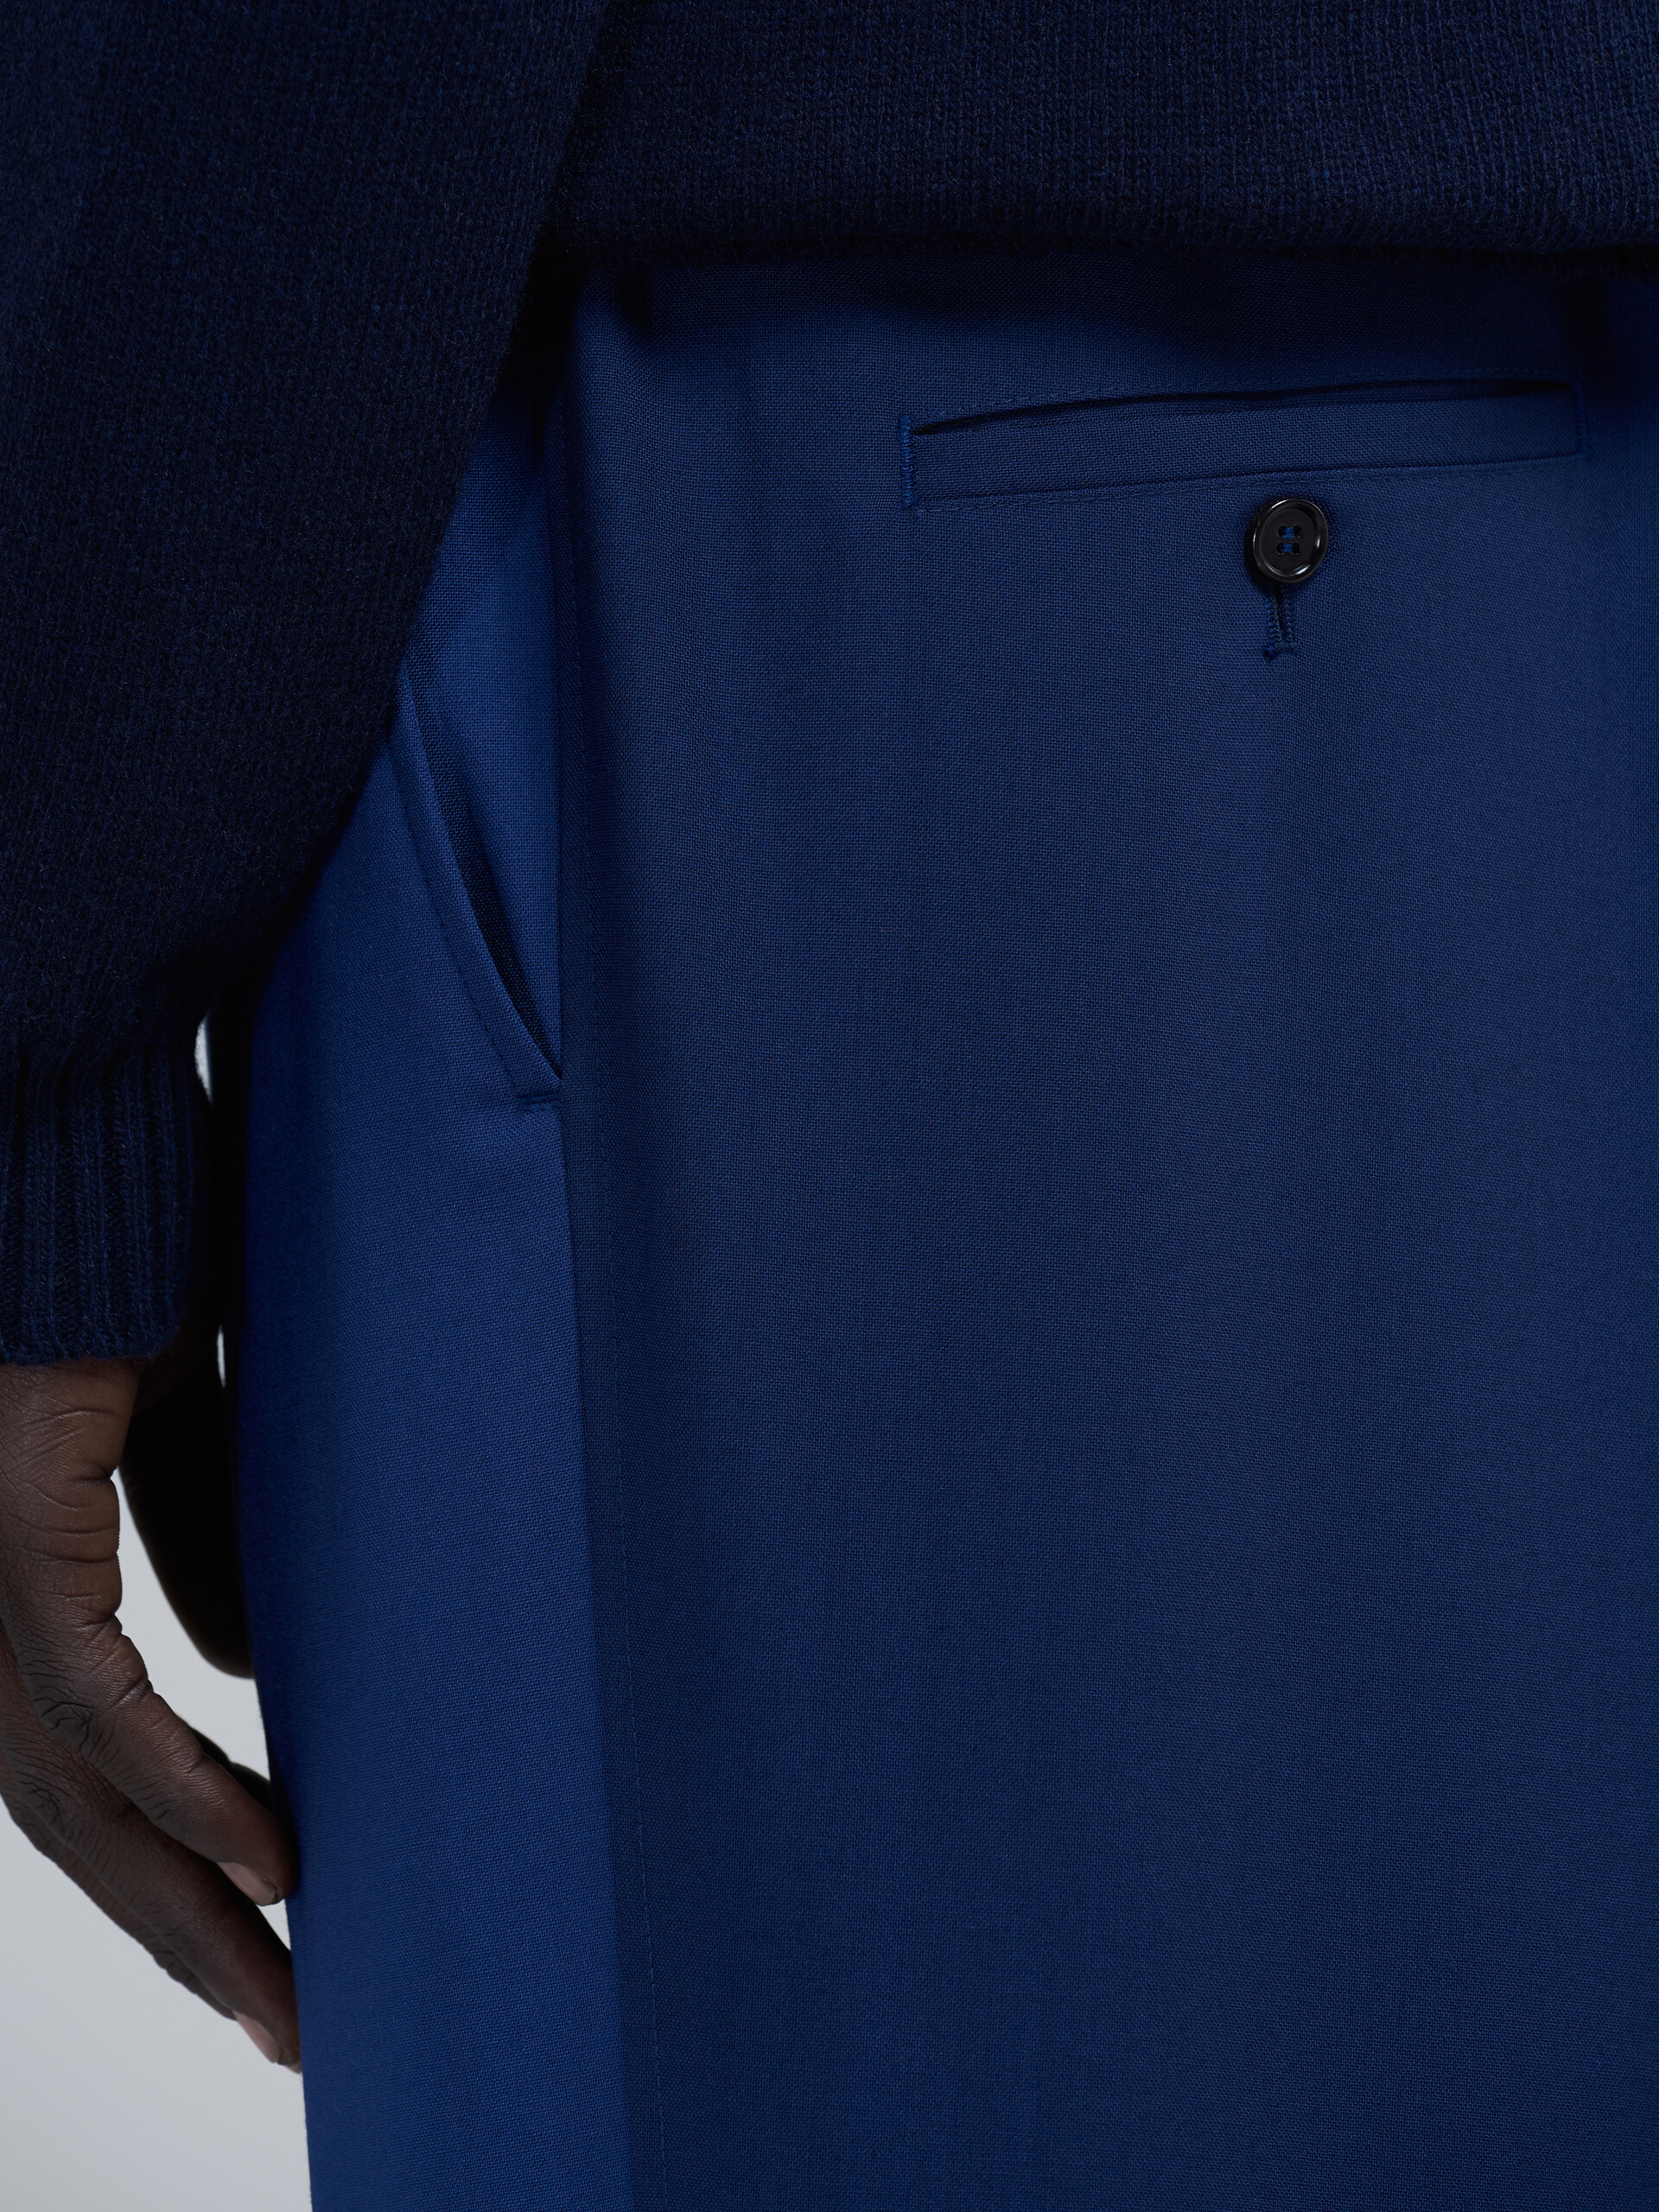 Blaue Hose aus Tropenwolle im Blockfarbendesign - Hosen - Image 4